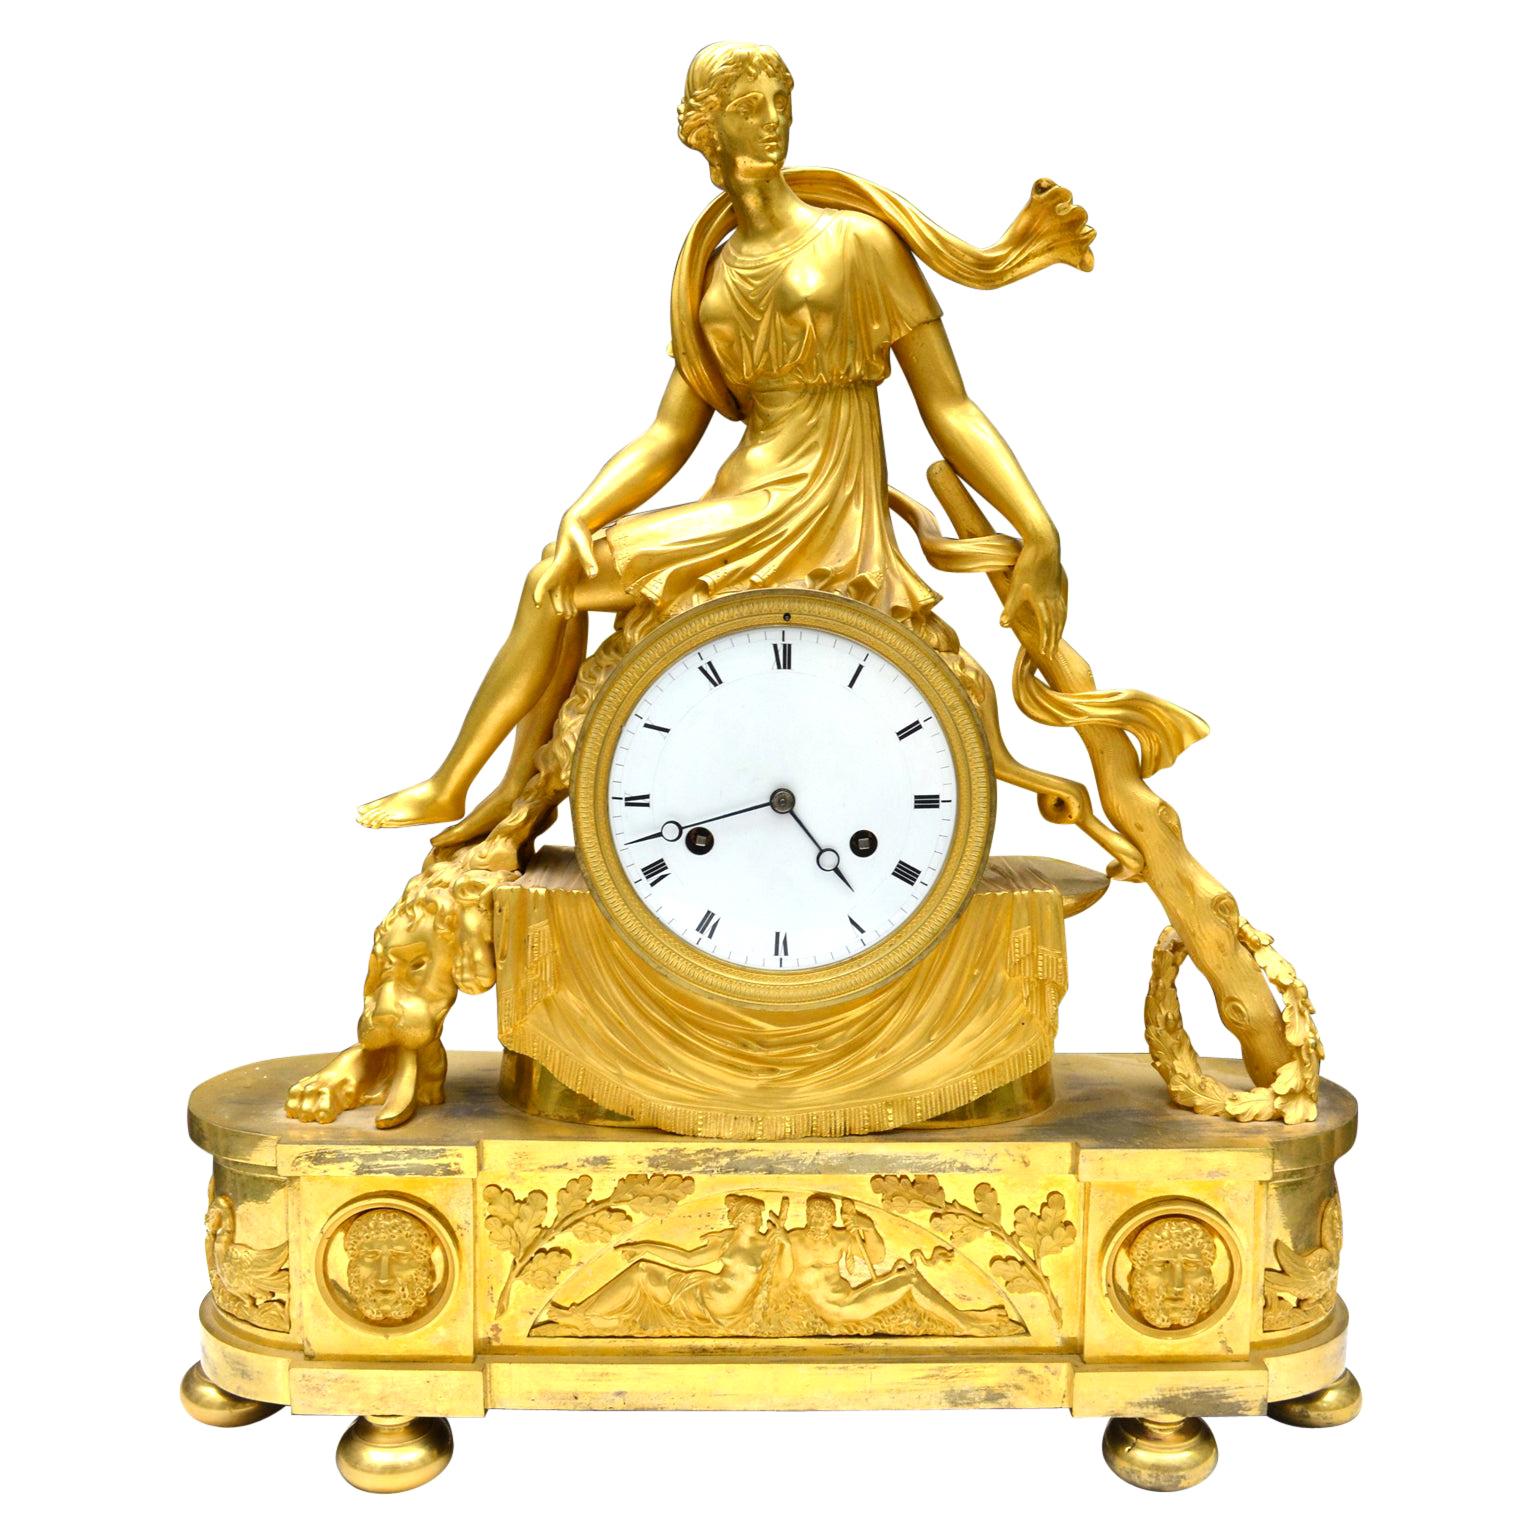 Pendule Empire en bronze doré du début du 19e siècle représentant la reine mythologique lydienne Omphale assise à califourchon sur un tambour drapé qui contient le cadran et le mouvement de la pendule. Omphale est représentée avec la toison du lion